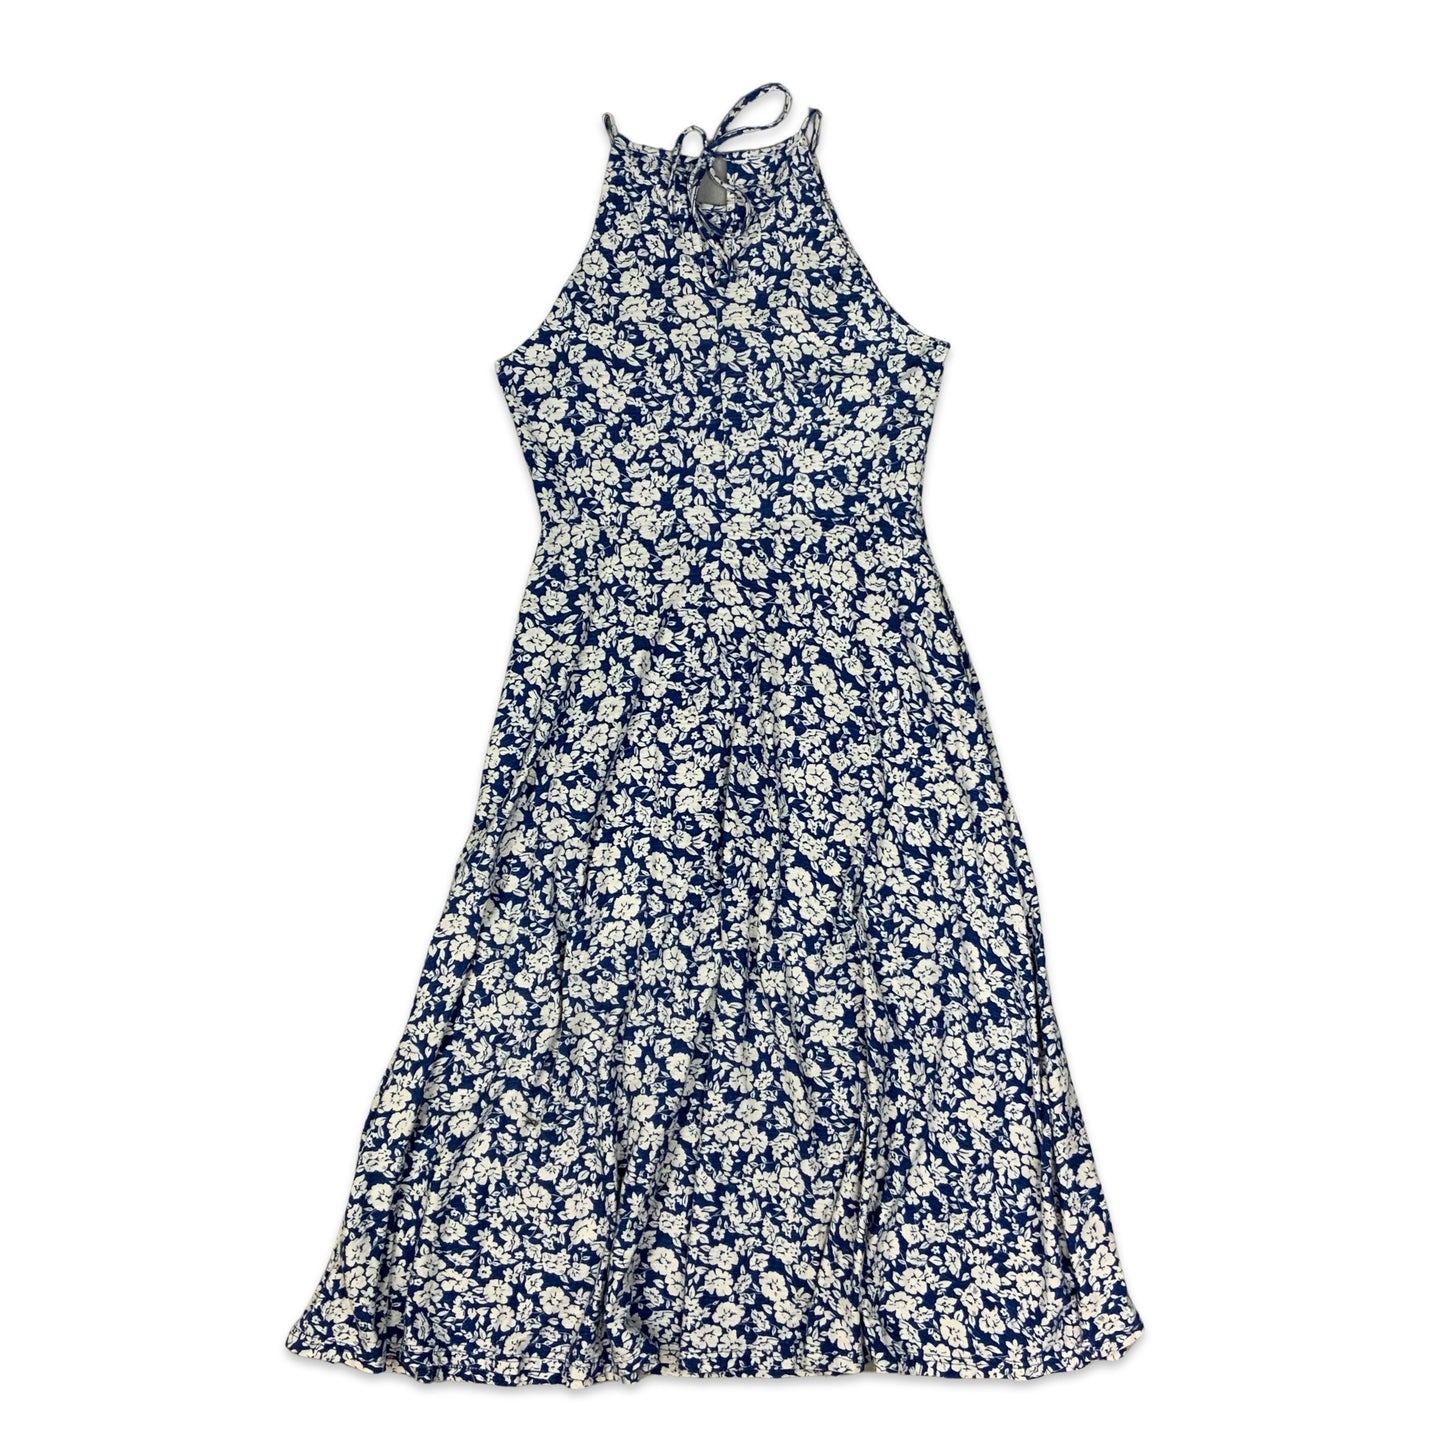 Ralph Lauren Chaps Blue & White Floral Print Sleeveless Dress 8 10